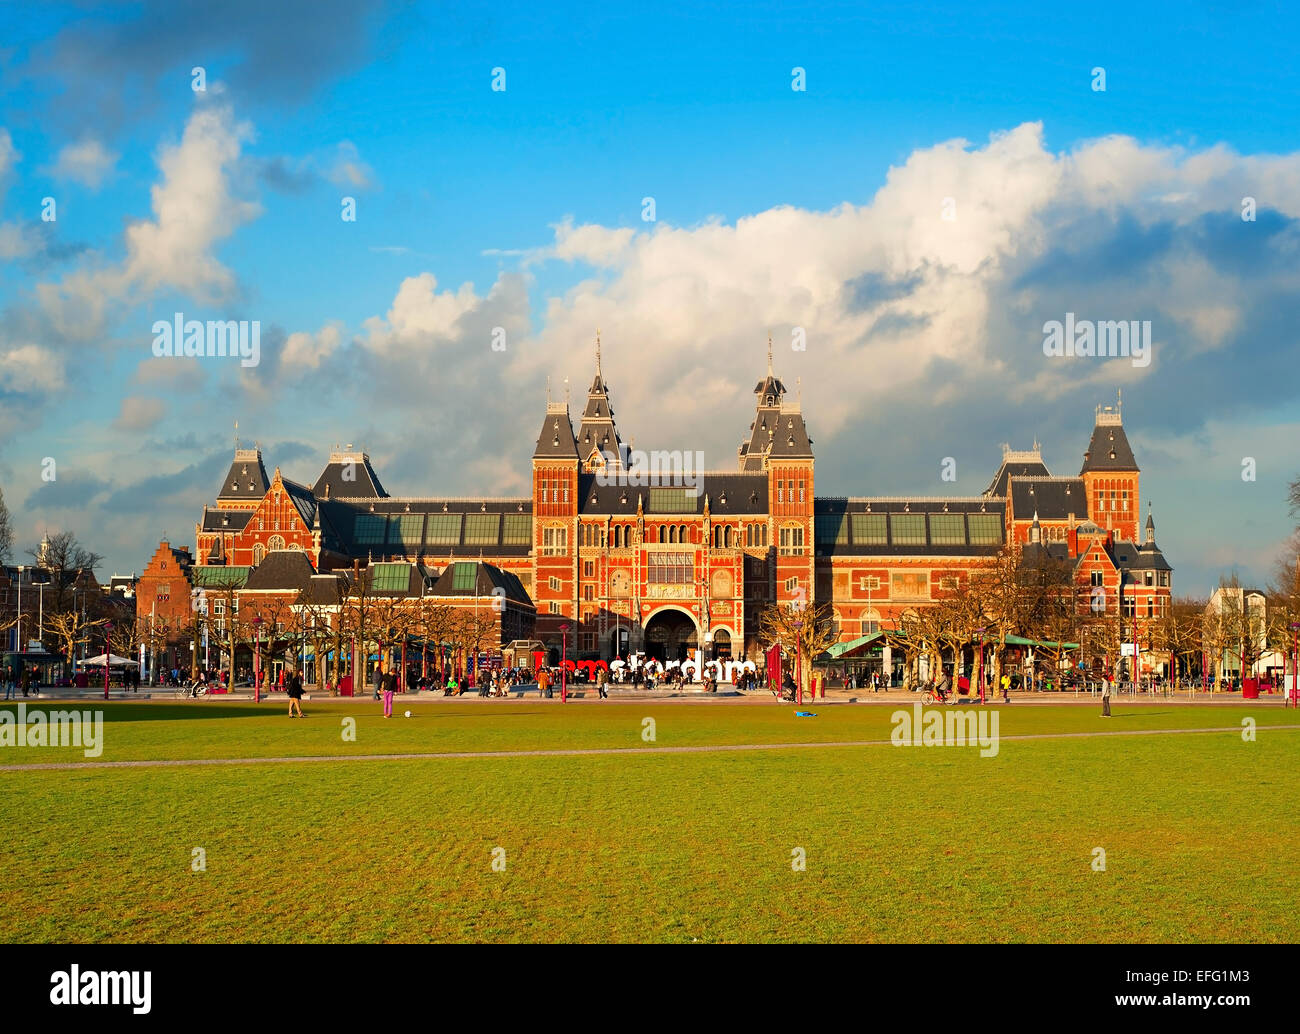 Le Rijksmuseum Amsterdam quartier des musées avec les Offres spéciales Iamsterdam mots. Pays-bas Banque D'Images